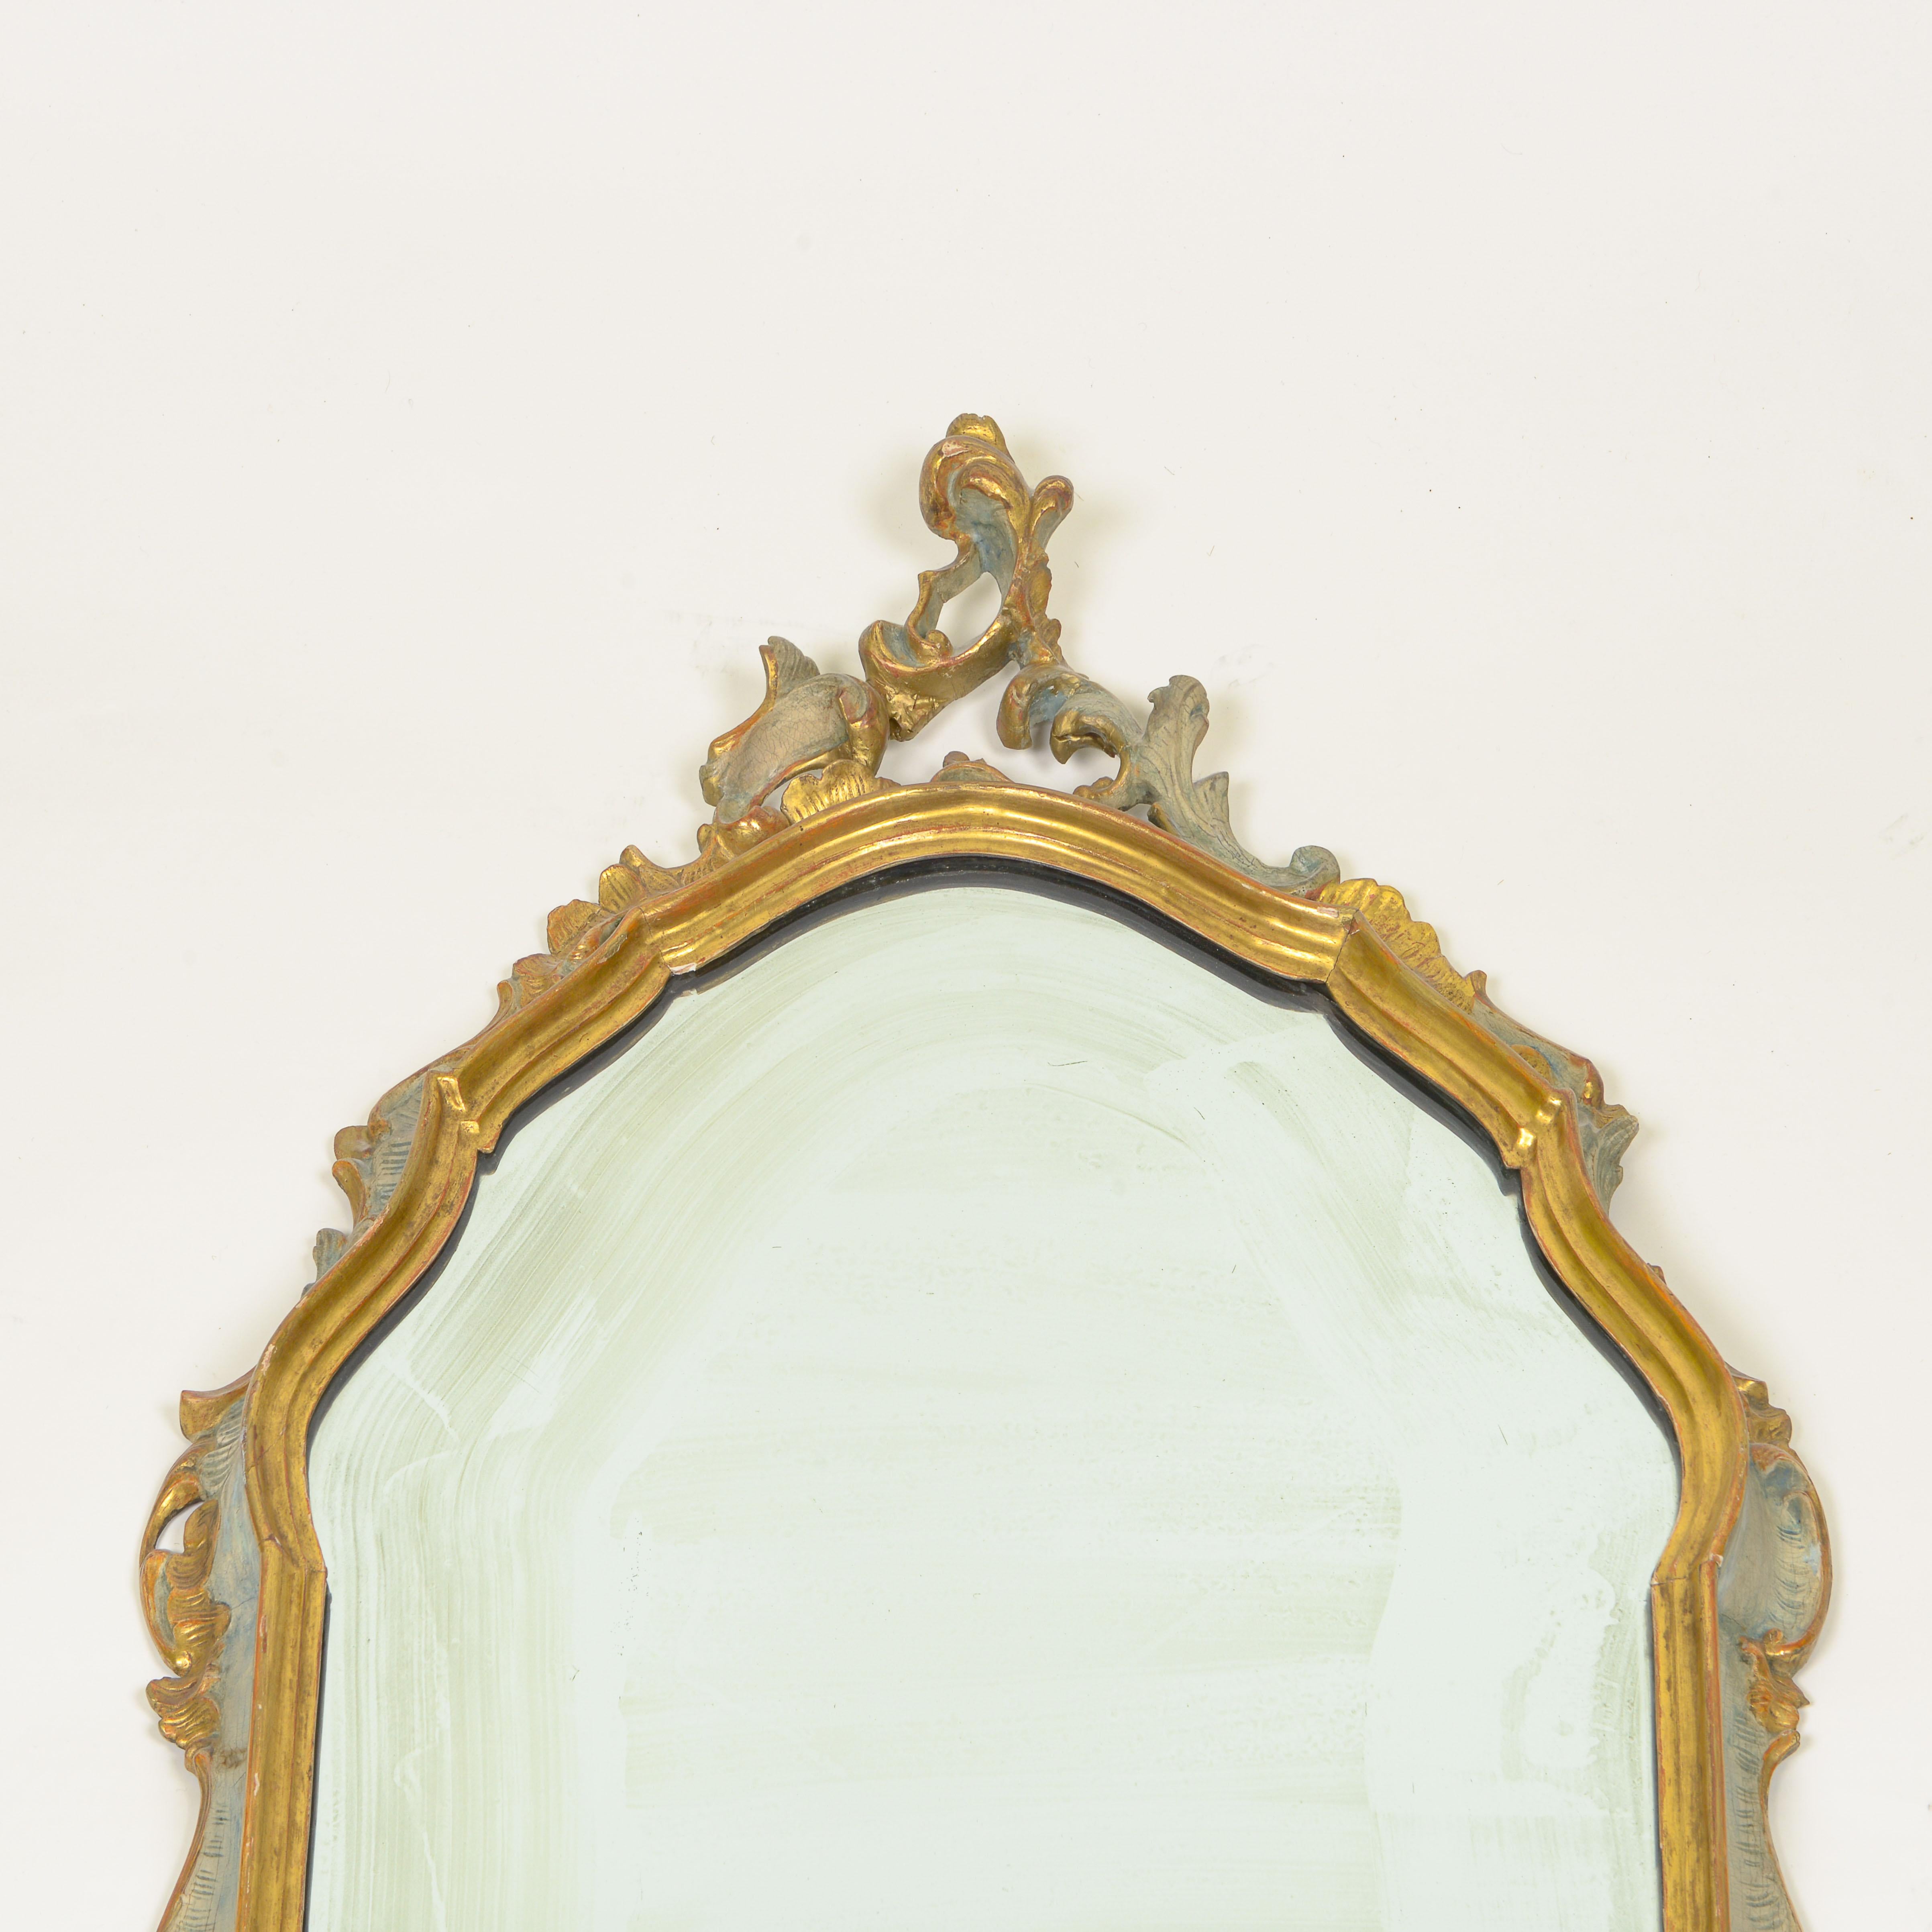 La plaque de miroir, de forme cartouche, est entourée d'un cadre conforme sculpté d'un décor de rocaille.